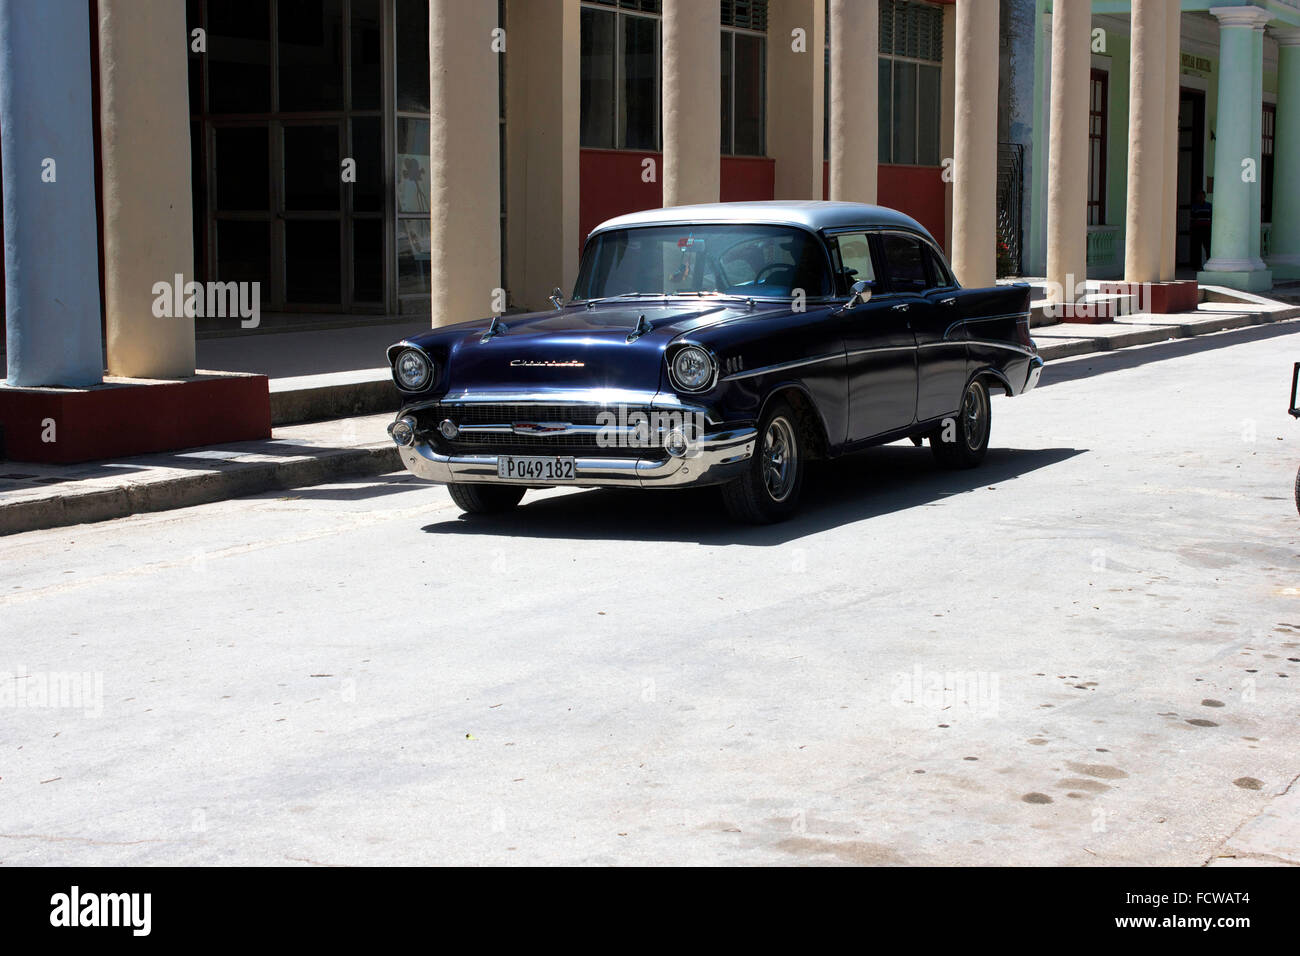 altmodische 50er Jahre Auto fahren durch die ruhigen kubanischen Straßen Stockfoto